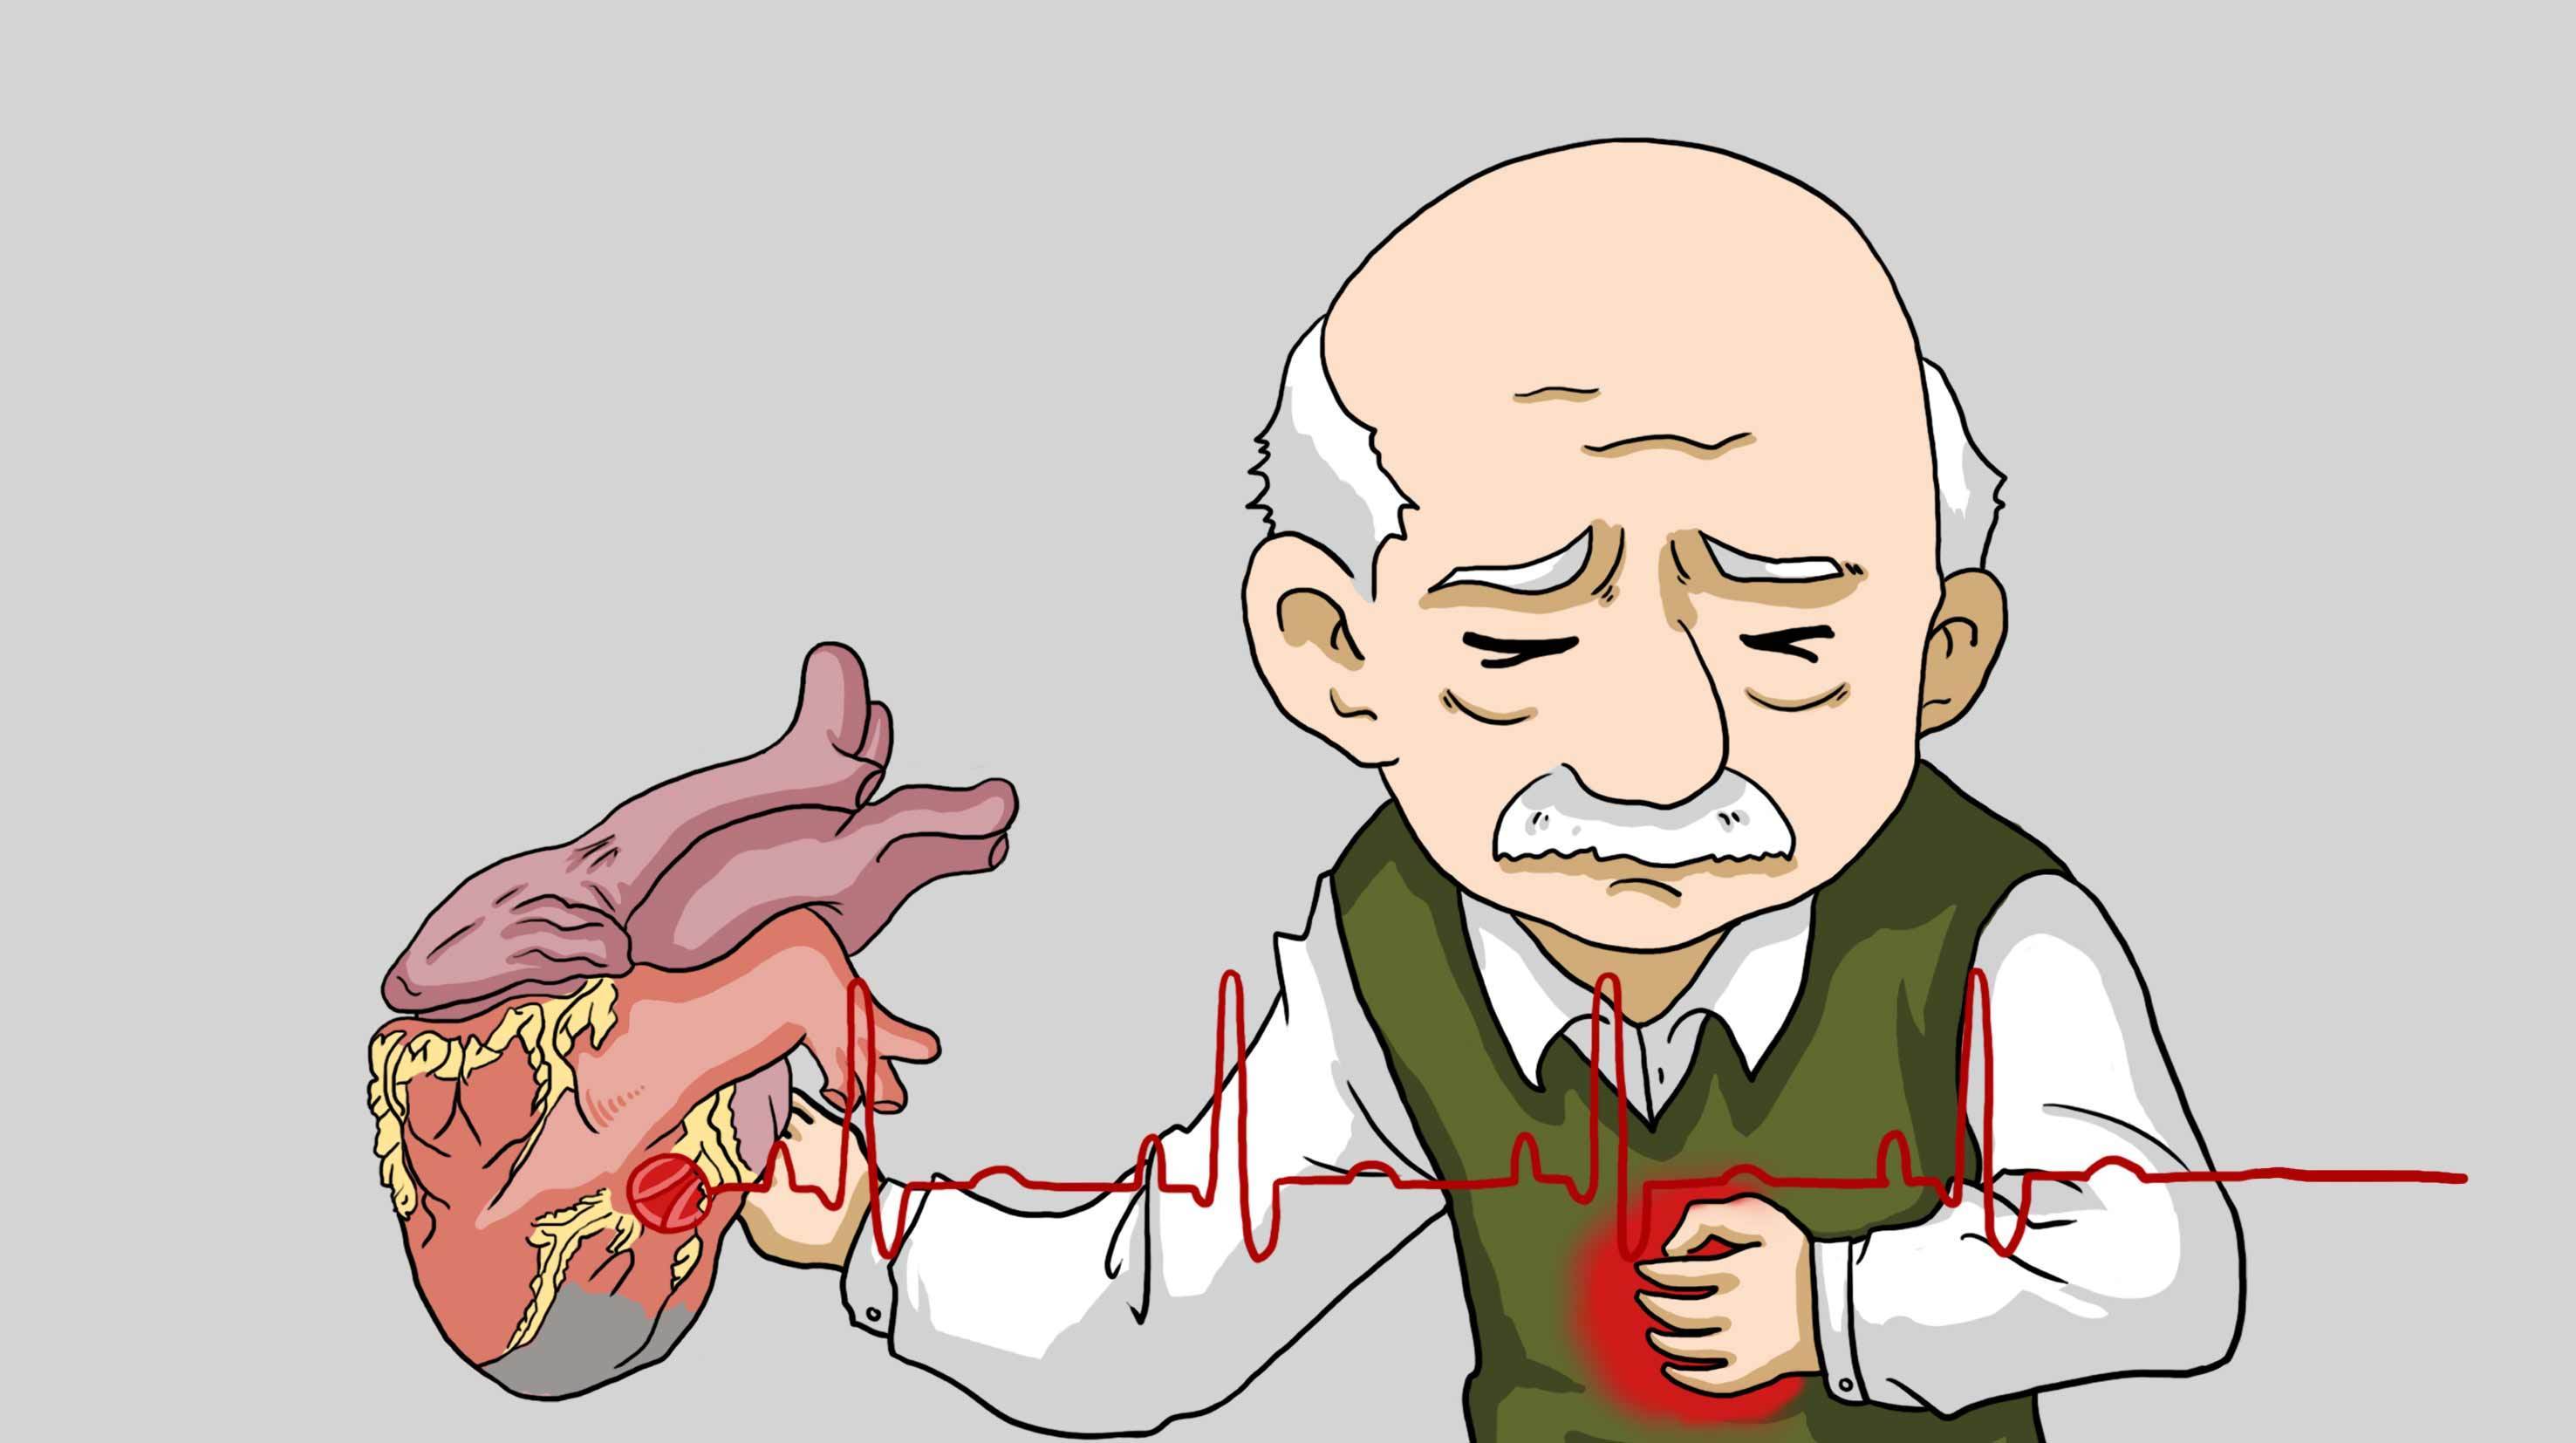 发生急性胸痛怎么办?早期快速识别是救命关键!记牢4条救治原则!